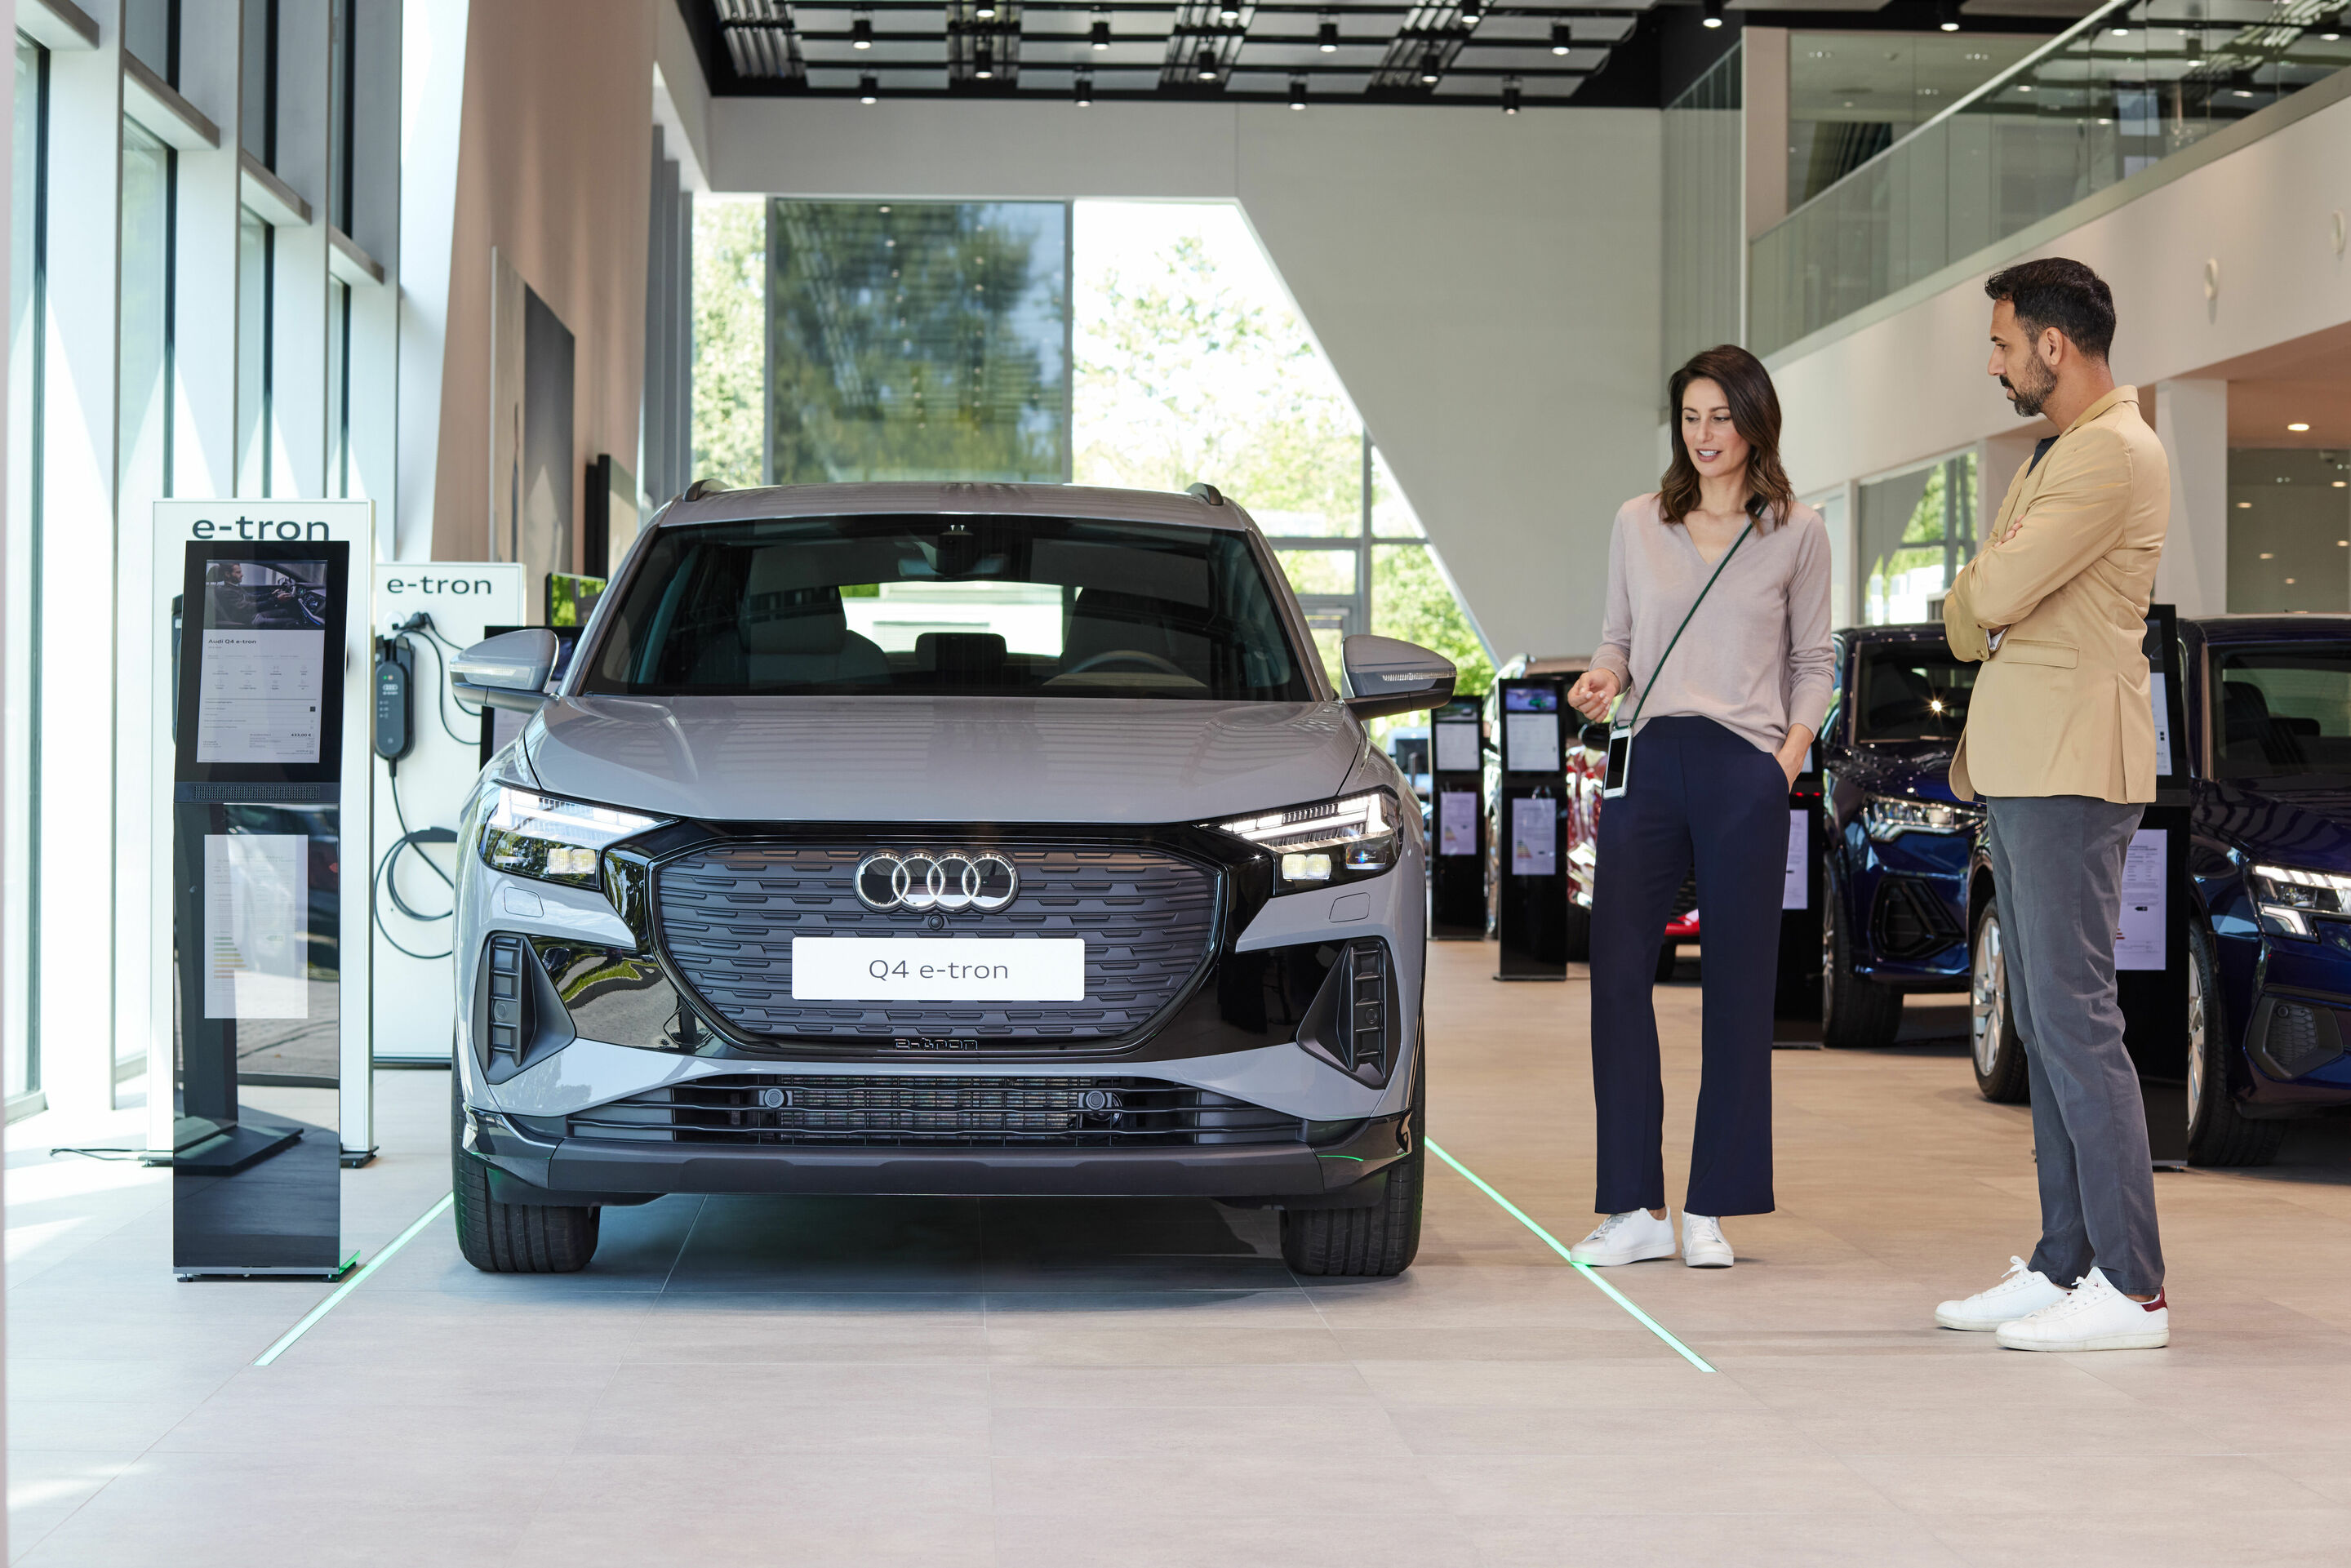 Audi erschließt neue Geschäftsmodelle und Umsatzpotenziale – im Handel, im Fahrzeug und über innovative Mobilitätsdienstleistungen.